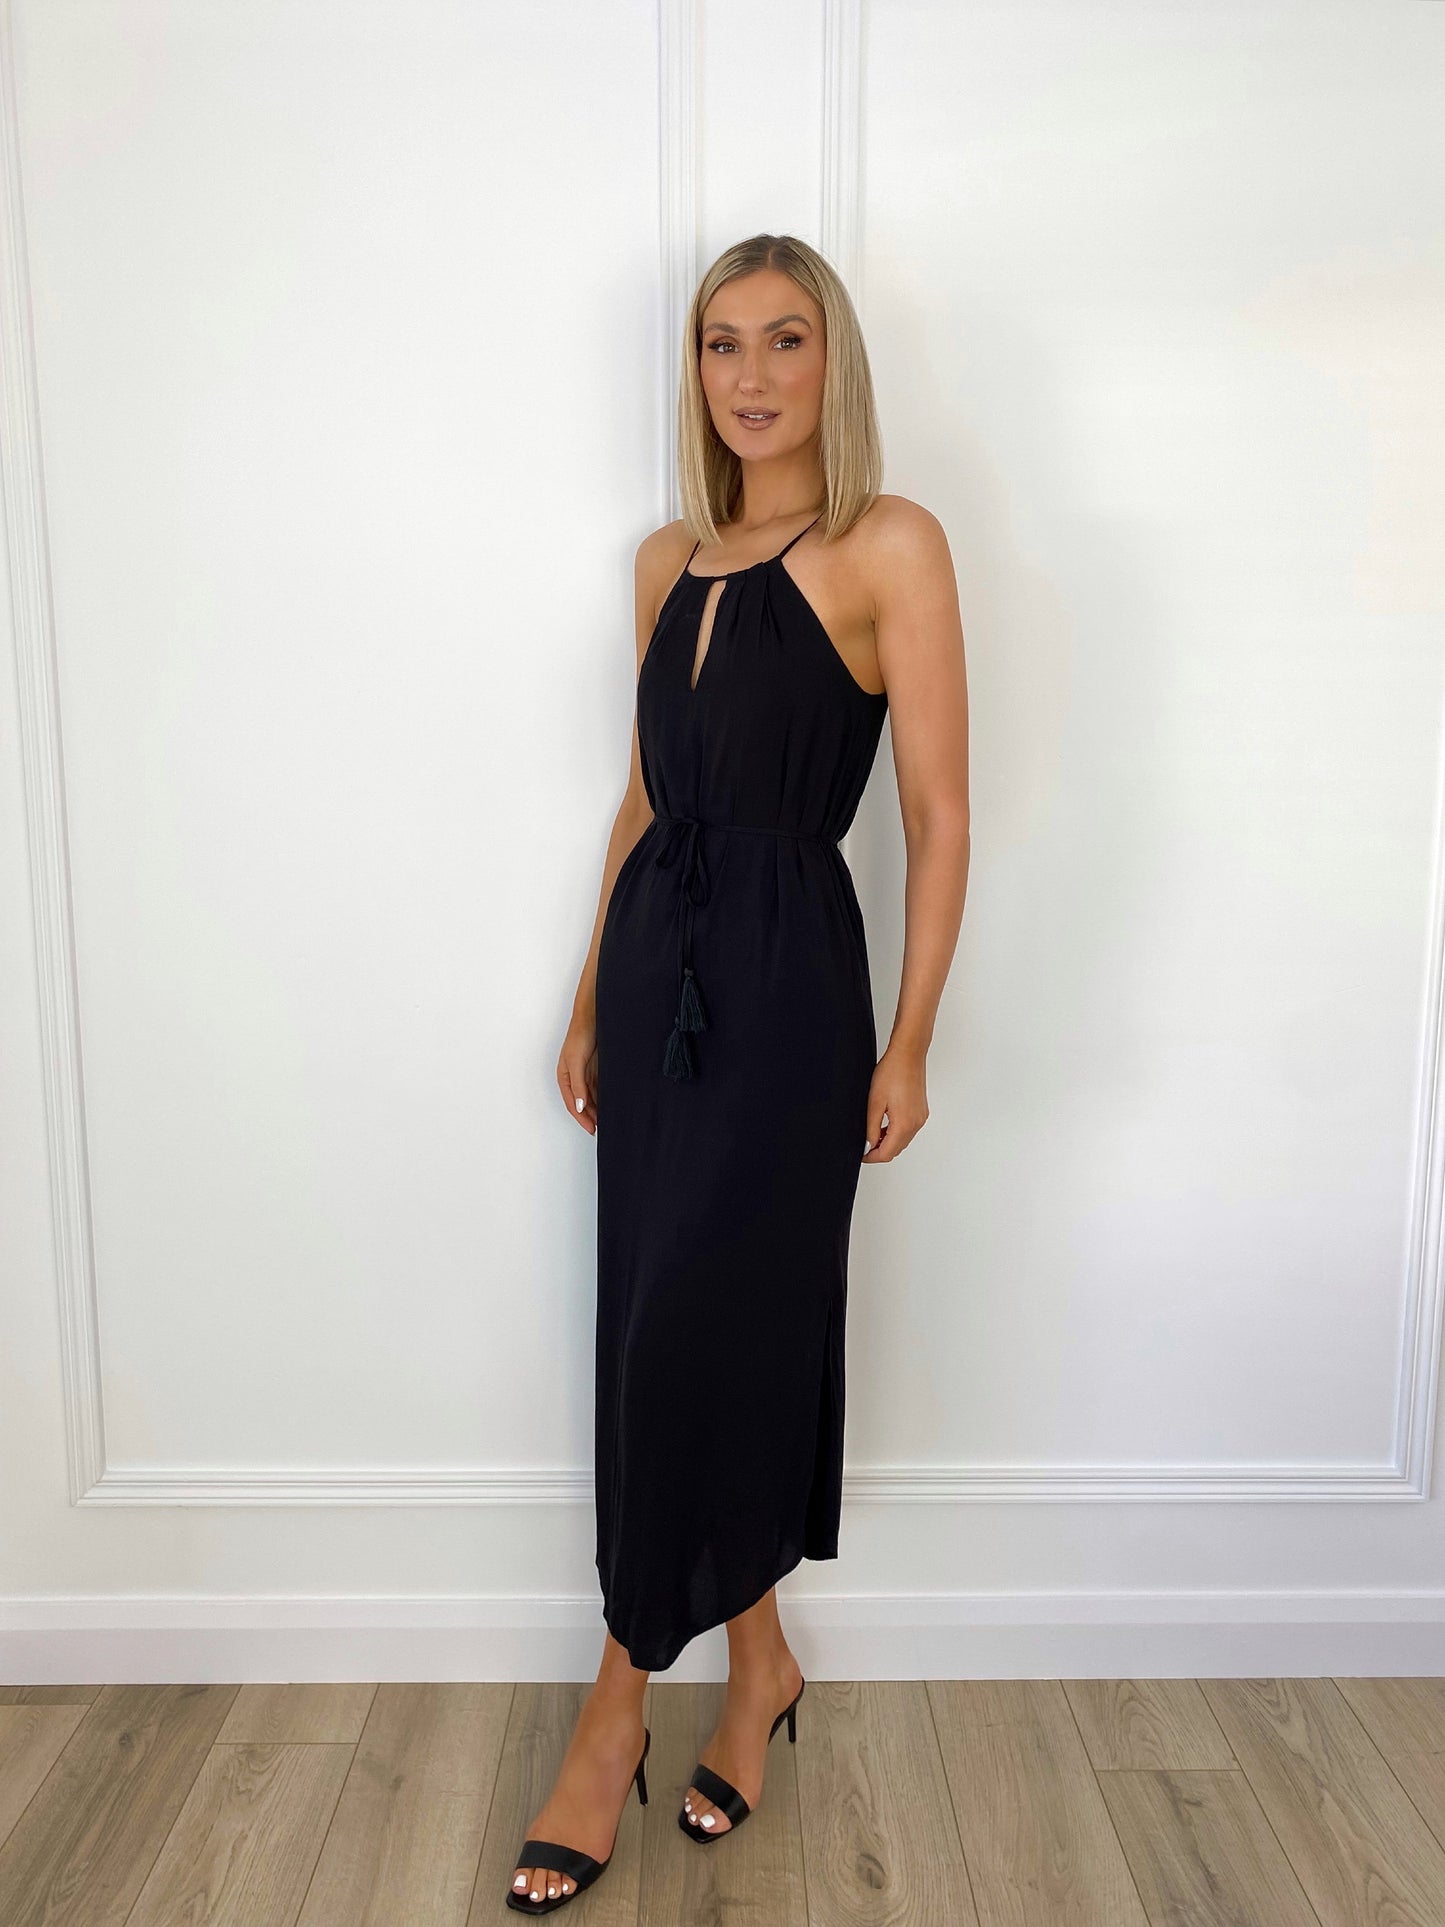 Tatiana Halter Long Dress - Black